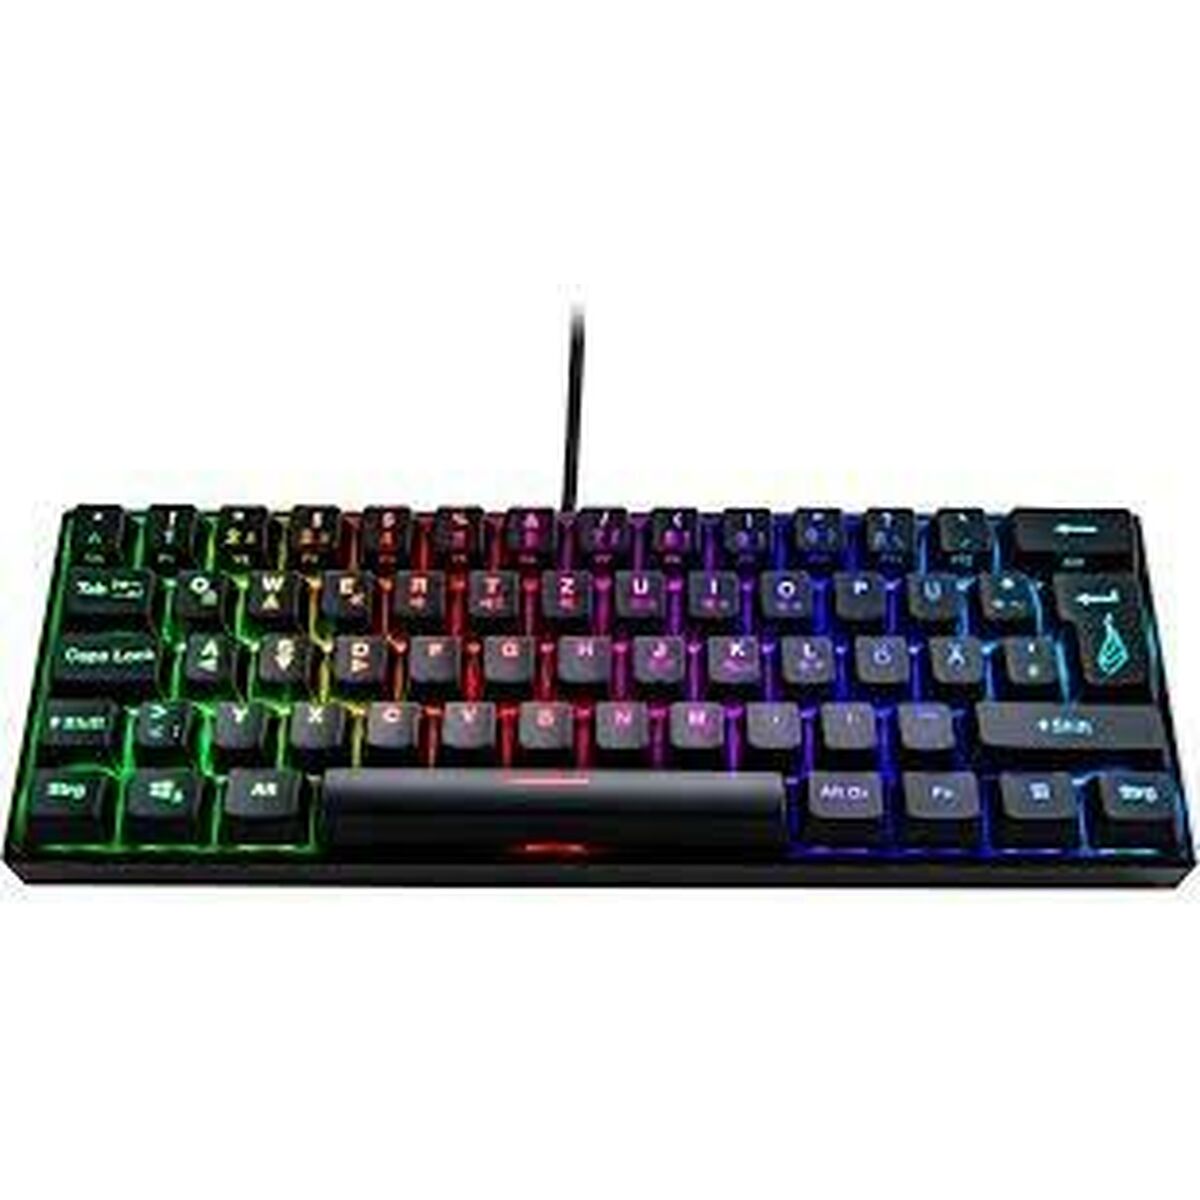 Keyboard Verbatim KP-M1 Black